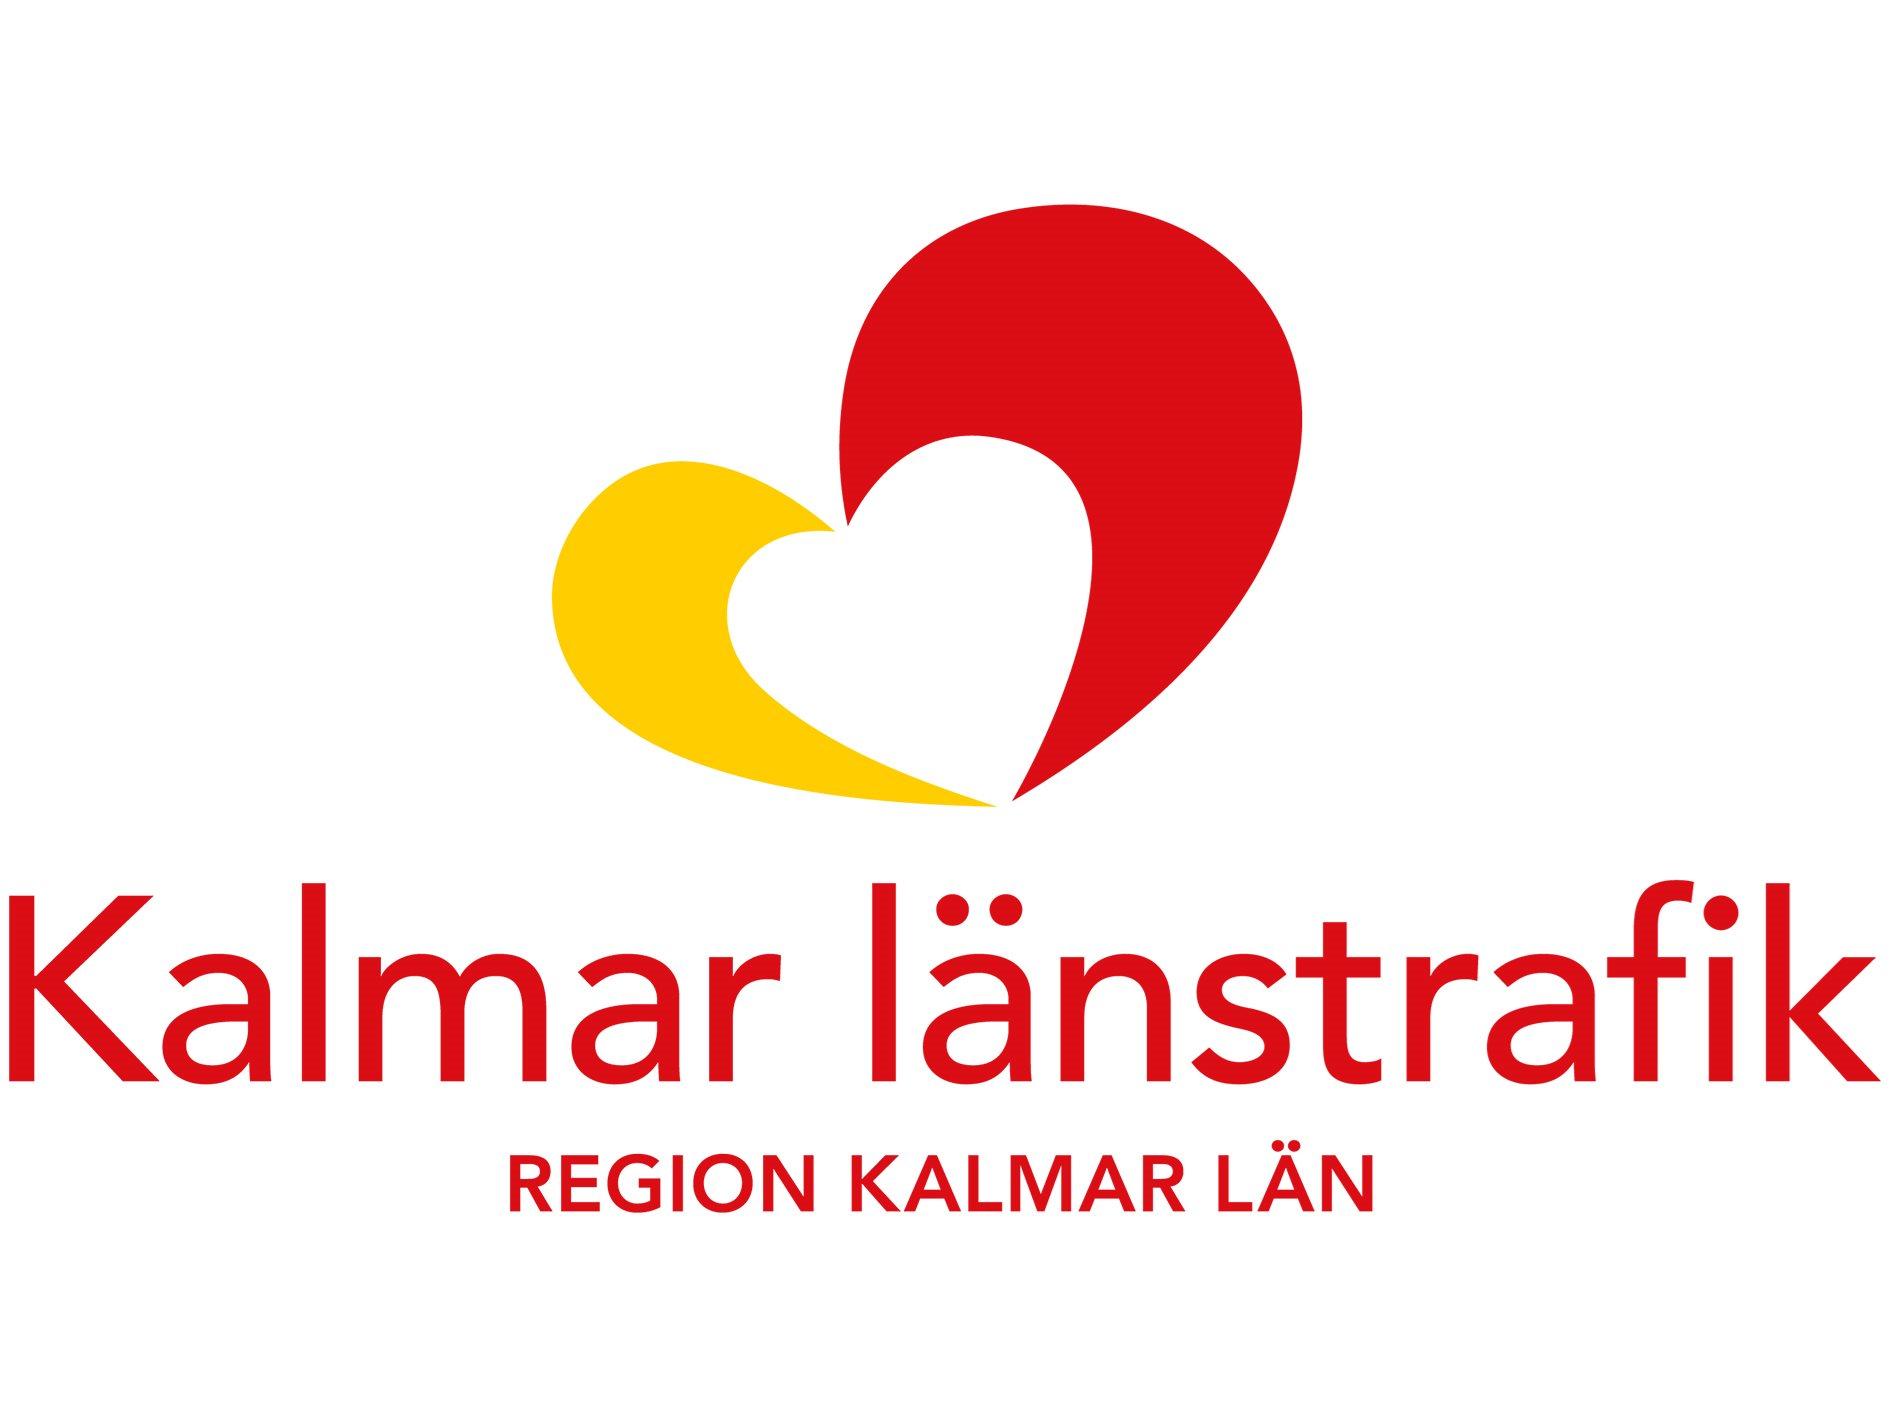 Logo of Kalmar länstrafik